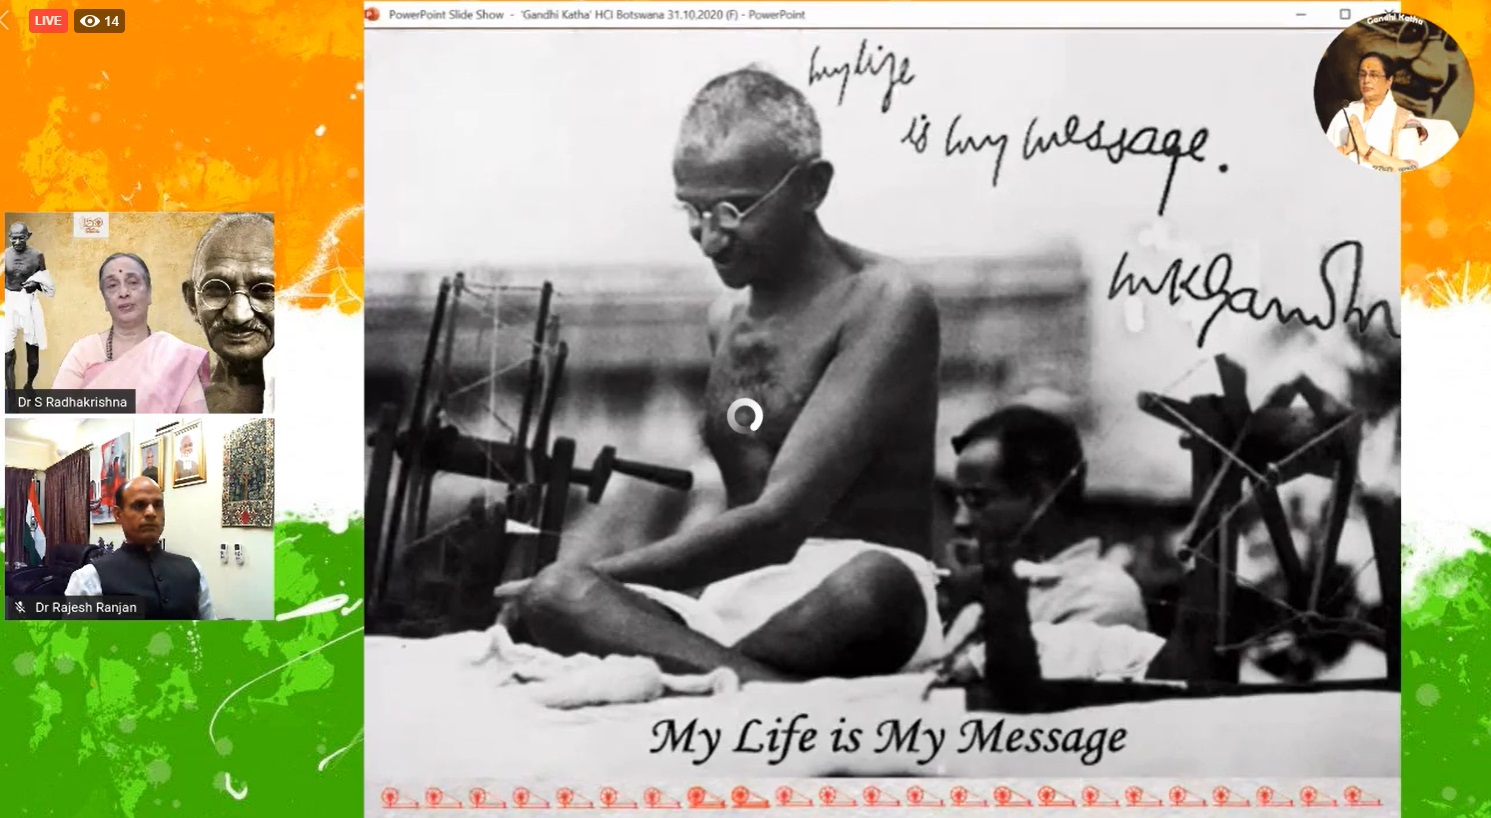 Gandhi Katha at 6.00 PM on 31 Oct 2020